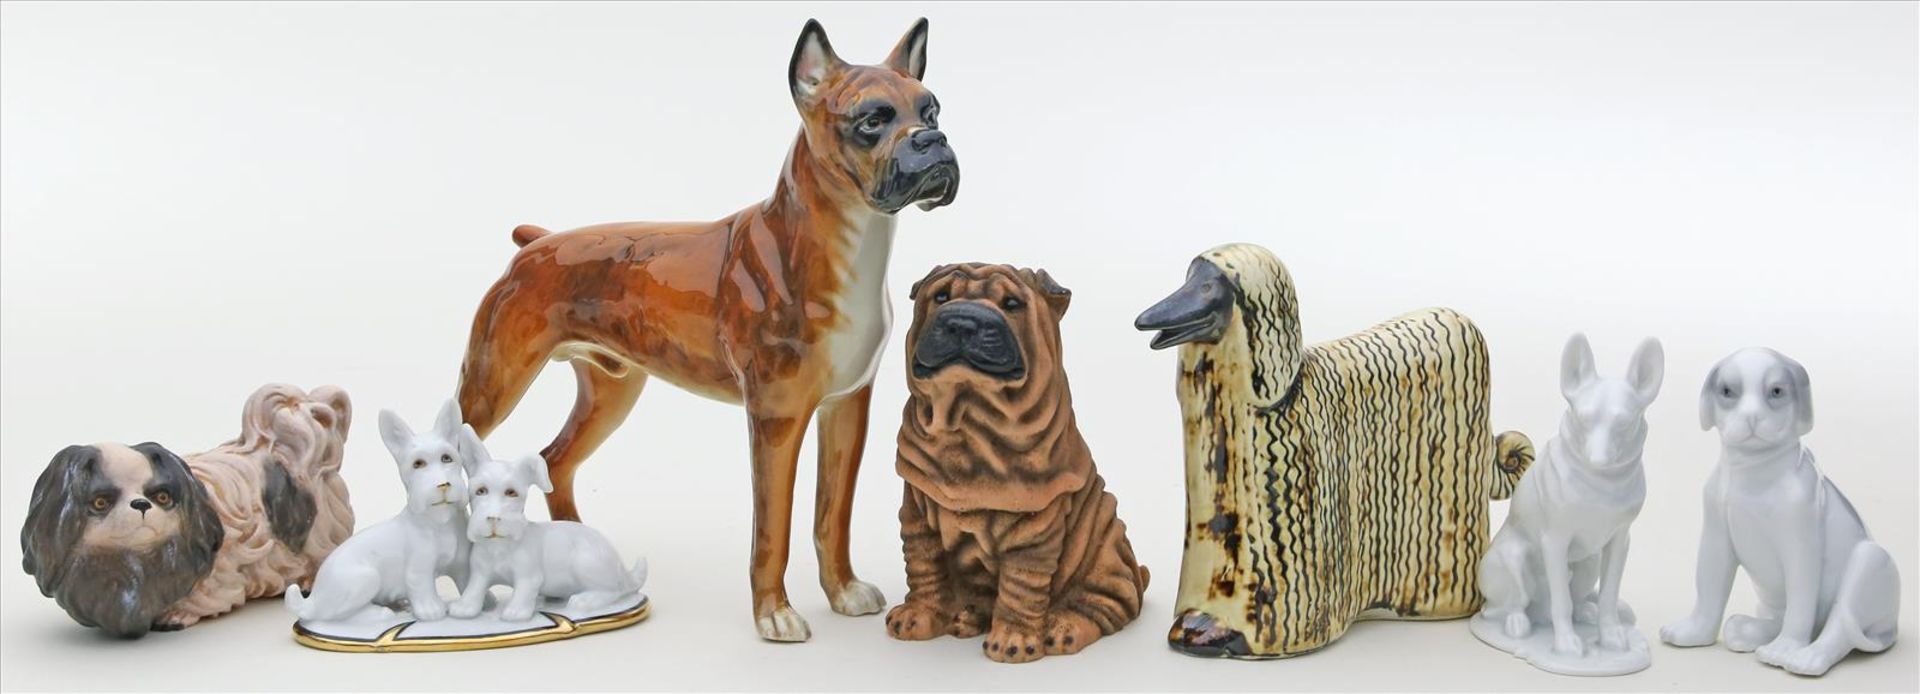 5 Hundeskulpturen.3x Porzellan, 2x Keramik. Meist bunt bemalt. Verschiedene Ausführungen, Formen und